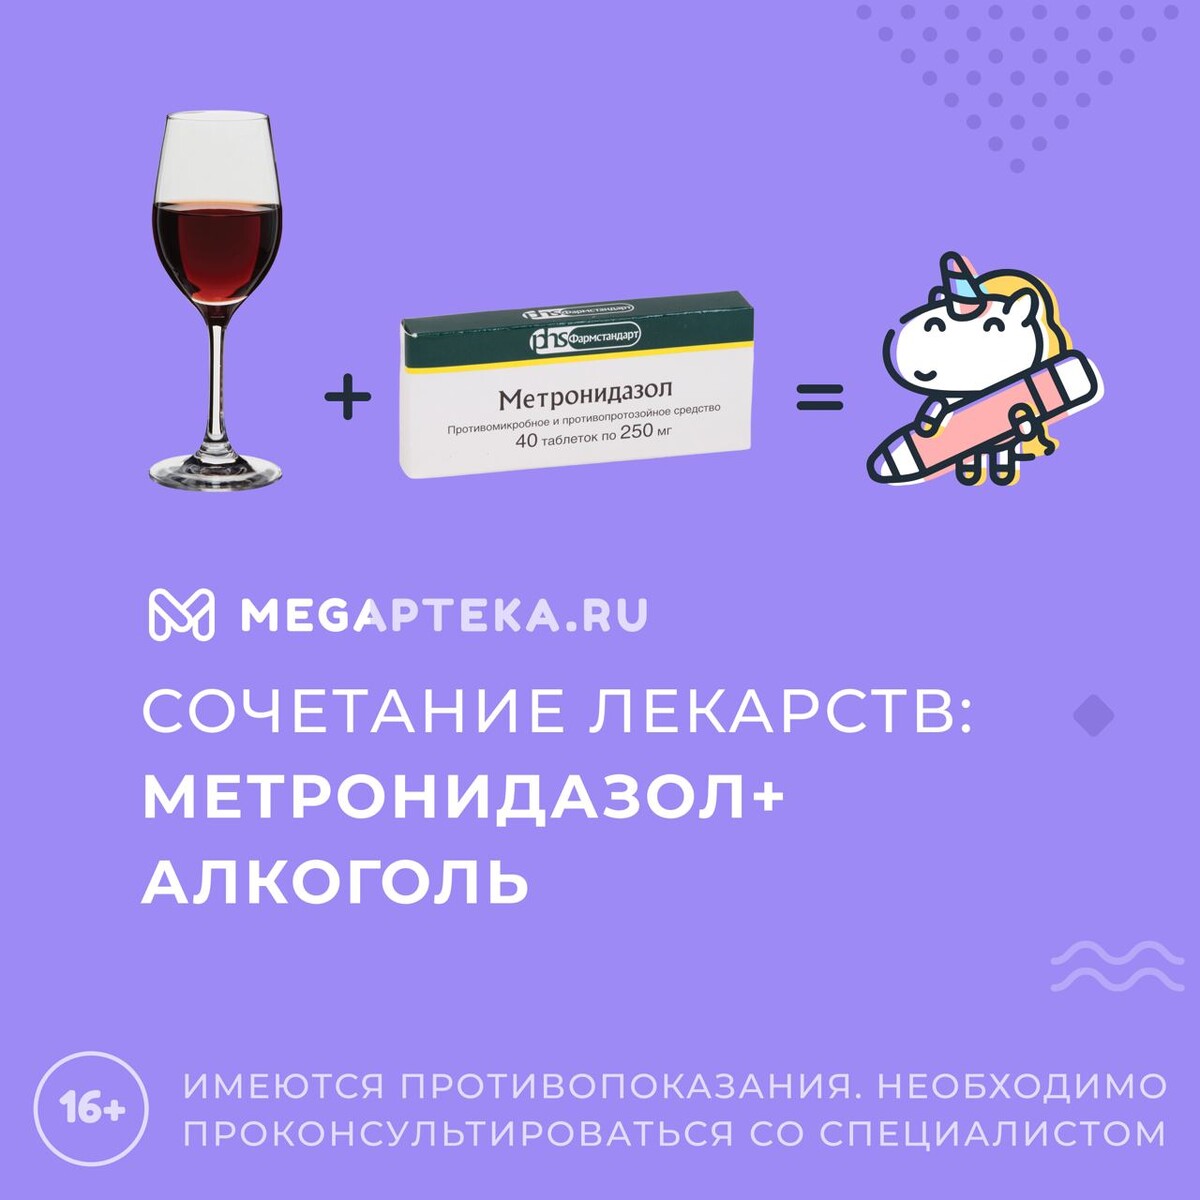 Мегаптека ру заказать лекарство. Сочетание метронидазола с алкоголем. Метронидазол можно ли с алкоголем употреблять. Можно ли употреблять алкоголь при приеме метронидазола. Метронидазол таблетки от алкоголизма как принимать.